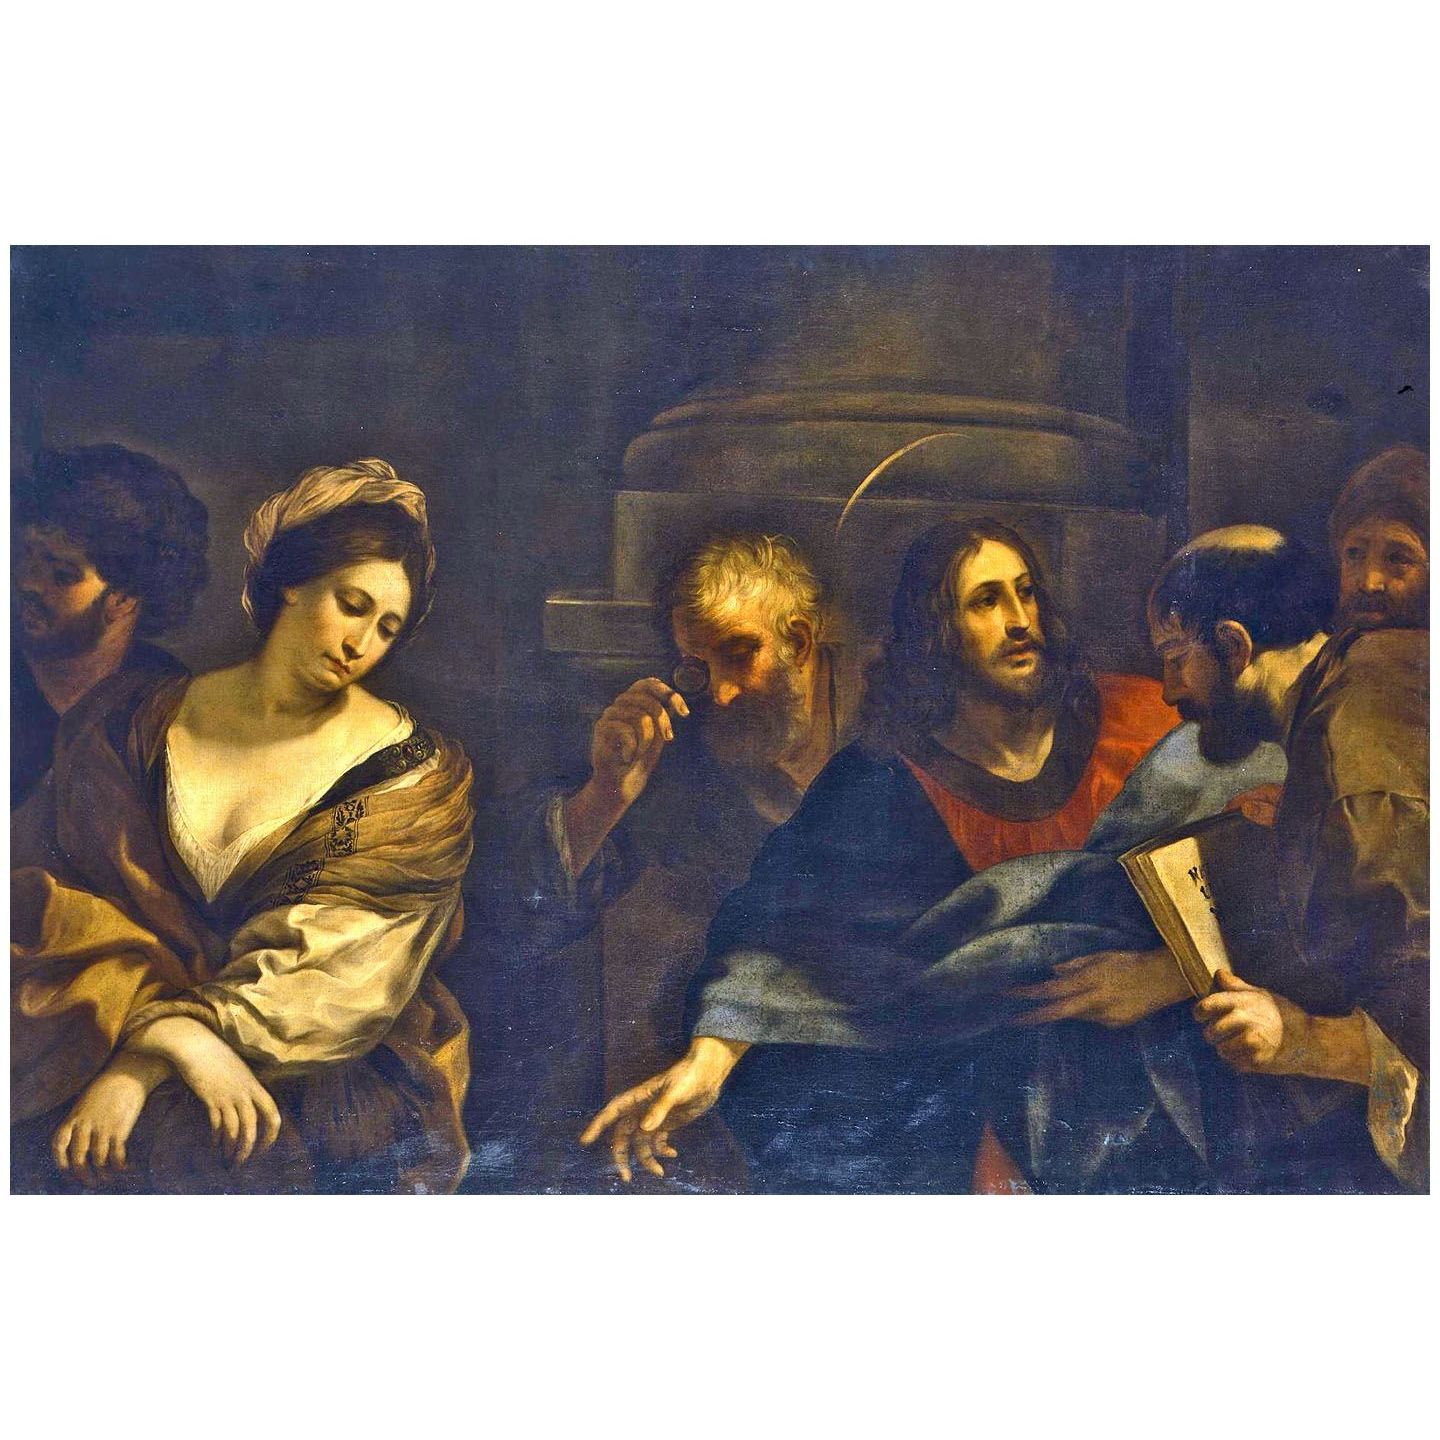 Pietro da Cortona. Cristo e il peccatrice. n/d. Hermitage